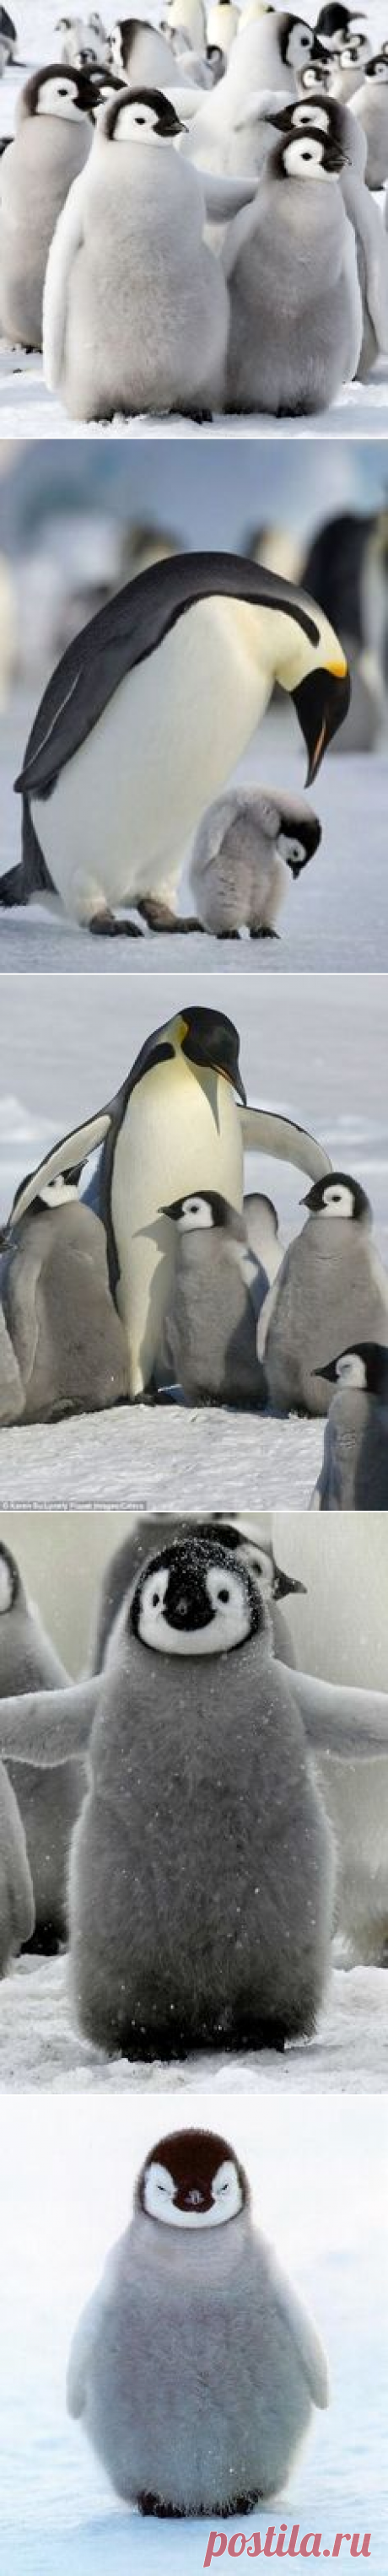 PENGUINS on Pinterest | Penguin Love, New Zealand and Mobile Wallpaper